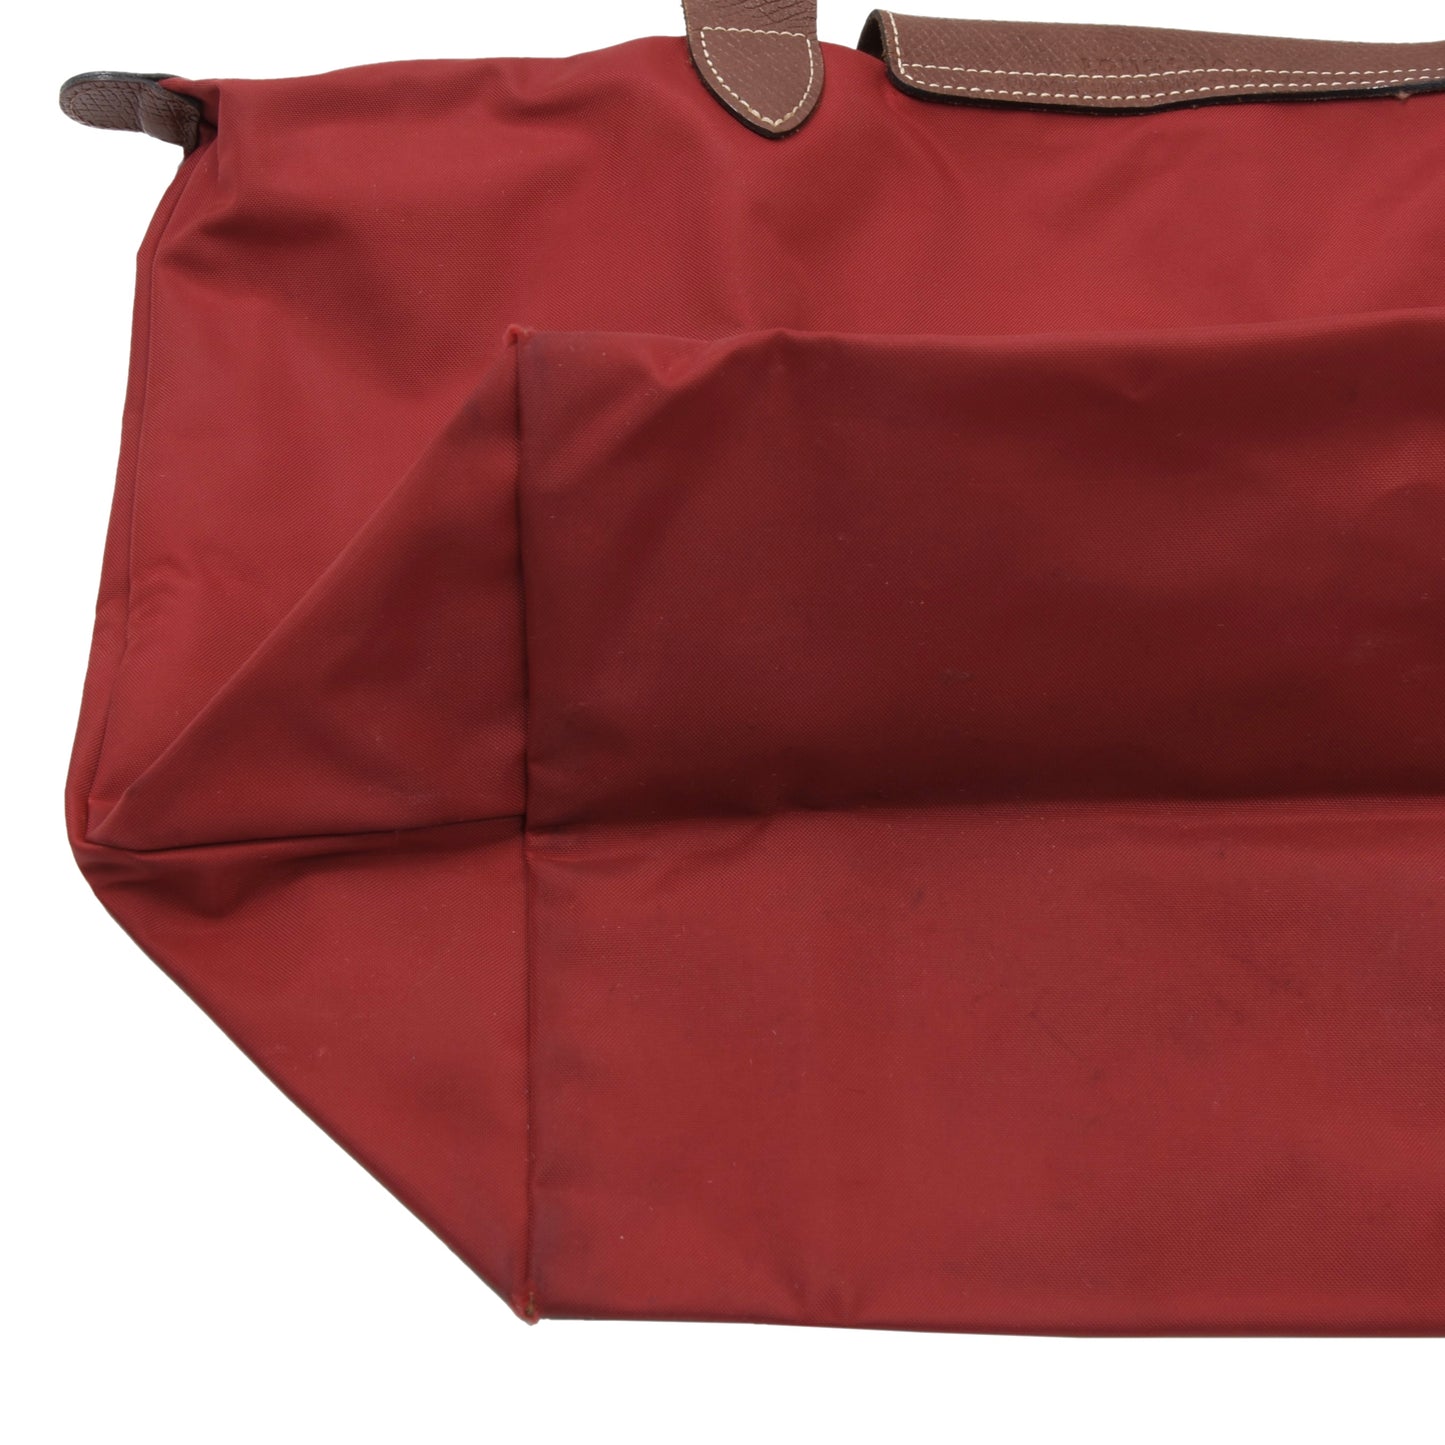 Longchamp Paris Les Pliage Bag Shopper - Red